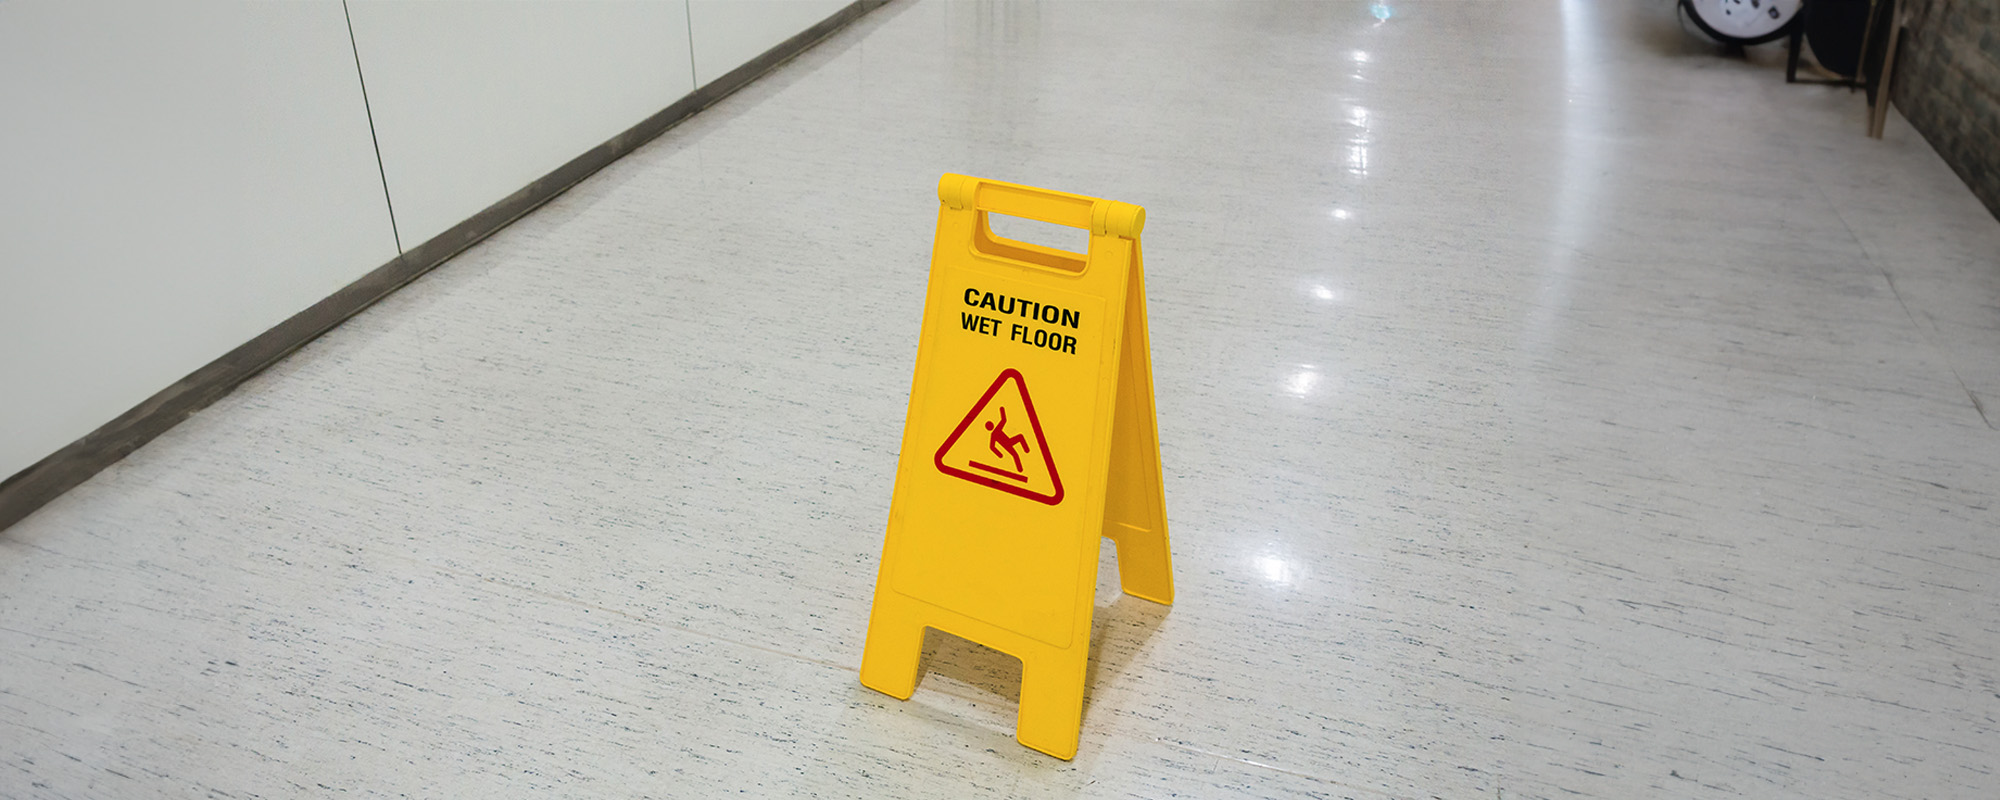 signs plastic yellow put on floor text caution wet floor